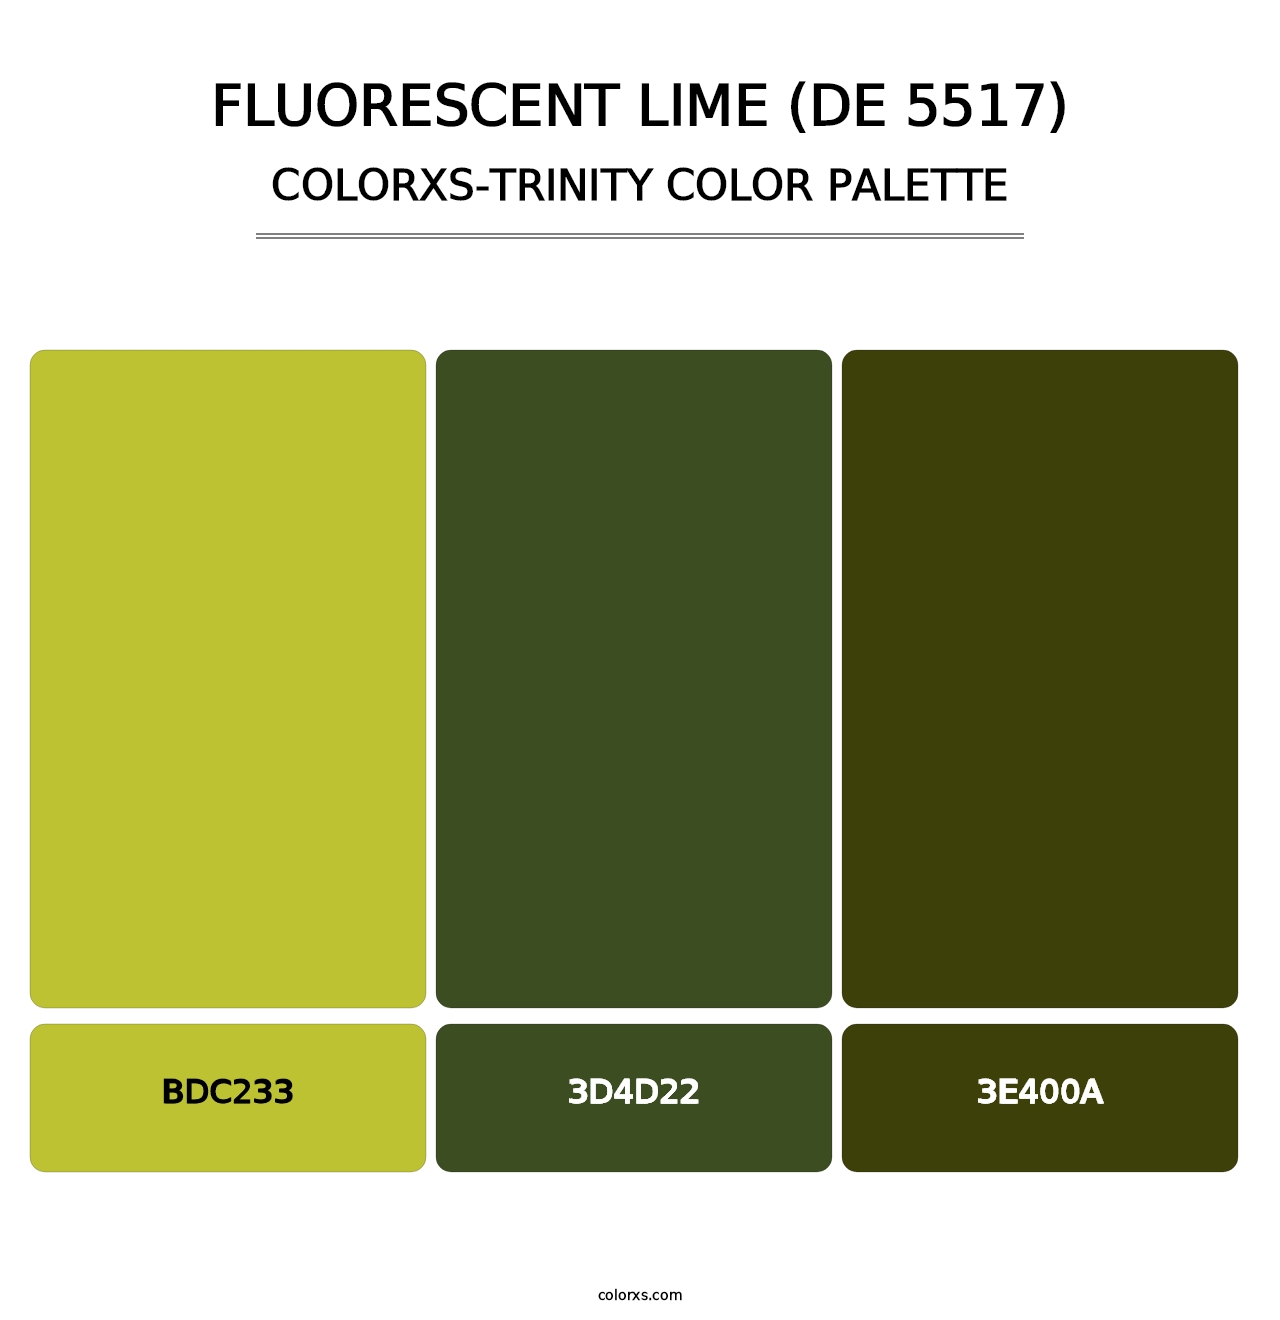 Fluorescent Lime (DE 5517) - Colorxs Trinity Palette